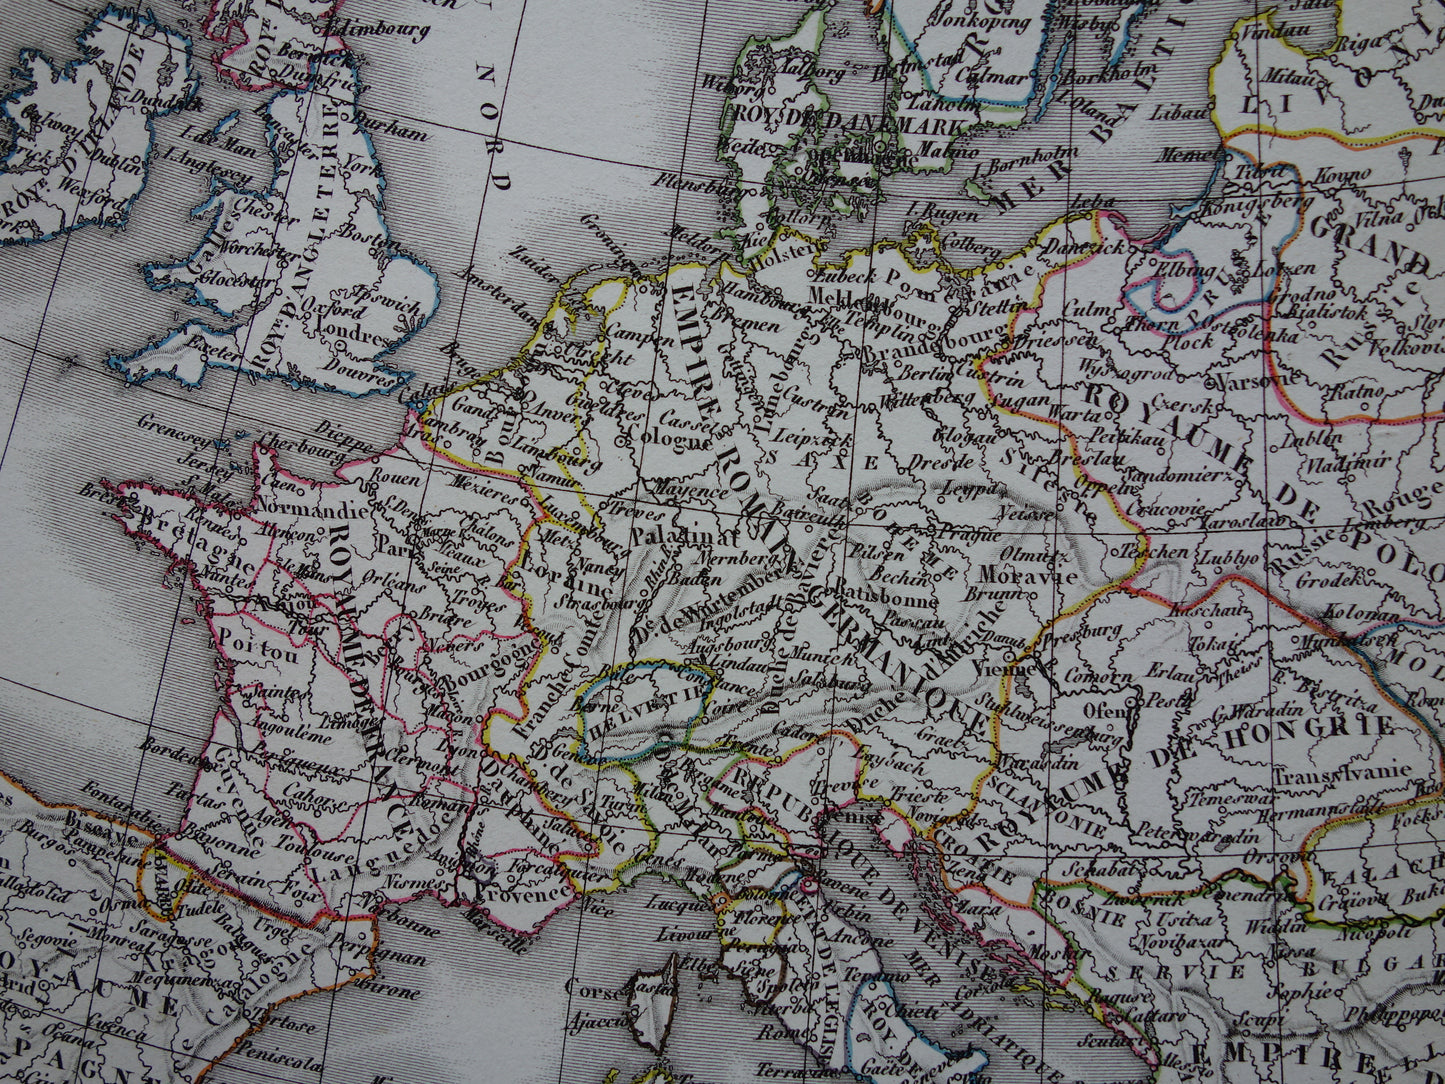 Geschiedenis van Europa antieke kaarten val van het Romeinse rijk - Karel de Grote 800 - Keizer Karel 5 1500 - originele oude landkaart